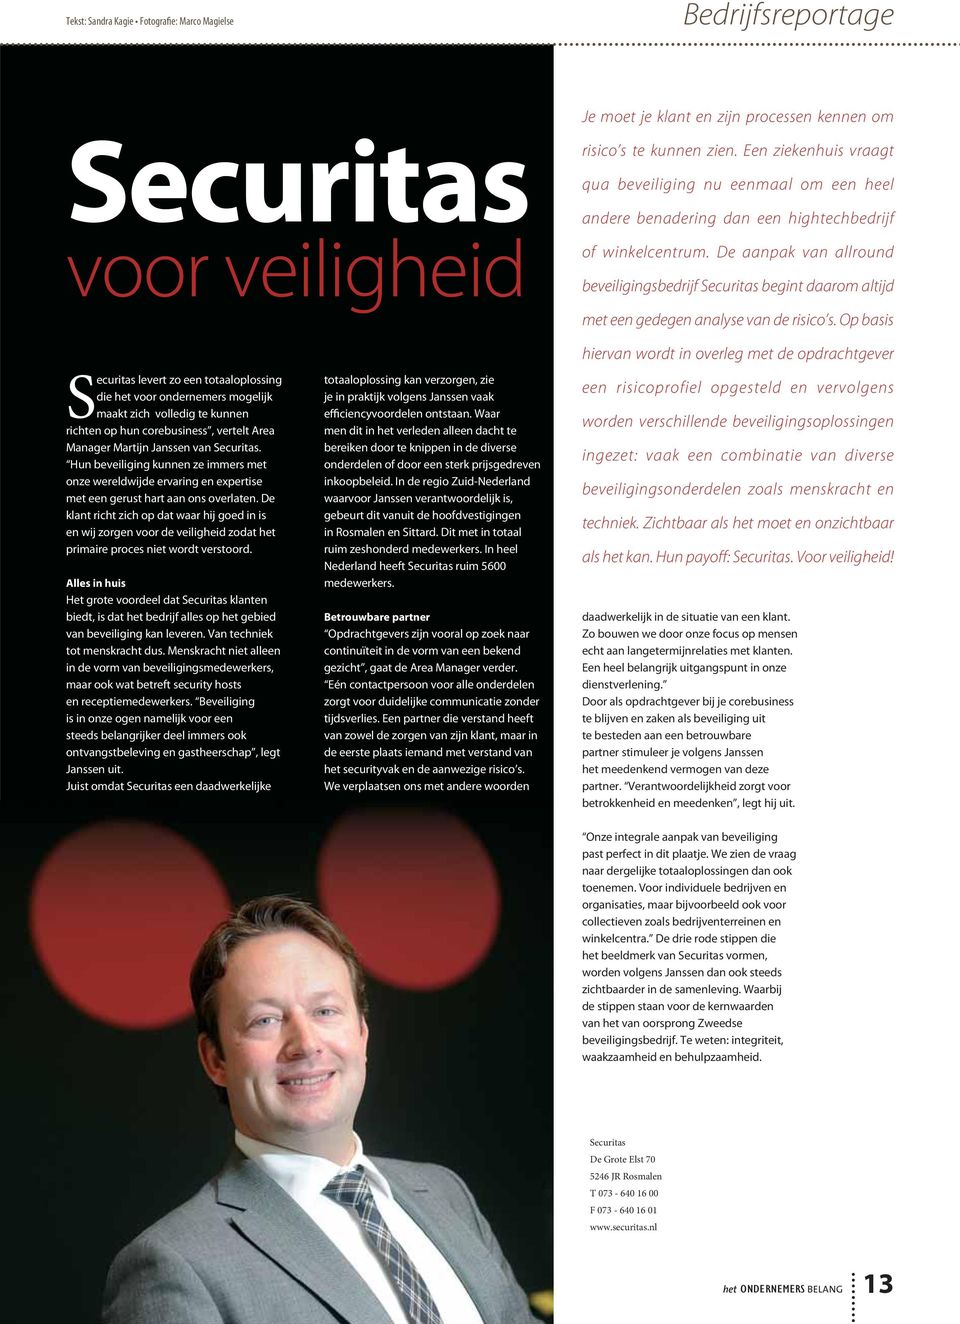 De aanpak van allround beveiligingsbedrijf Securitas begint daarom altijd Securitas levert zo een totaaloplossing die het voor ondernemers mogelijk maakt zich volledig te kunnen richten op hun